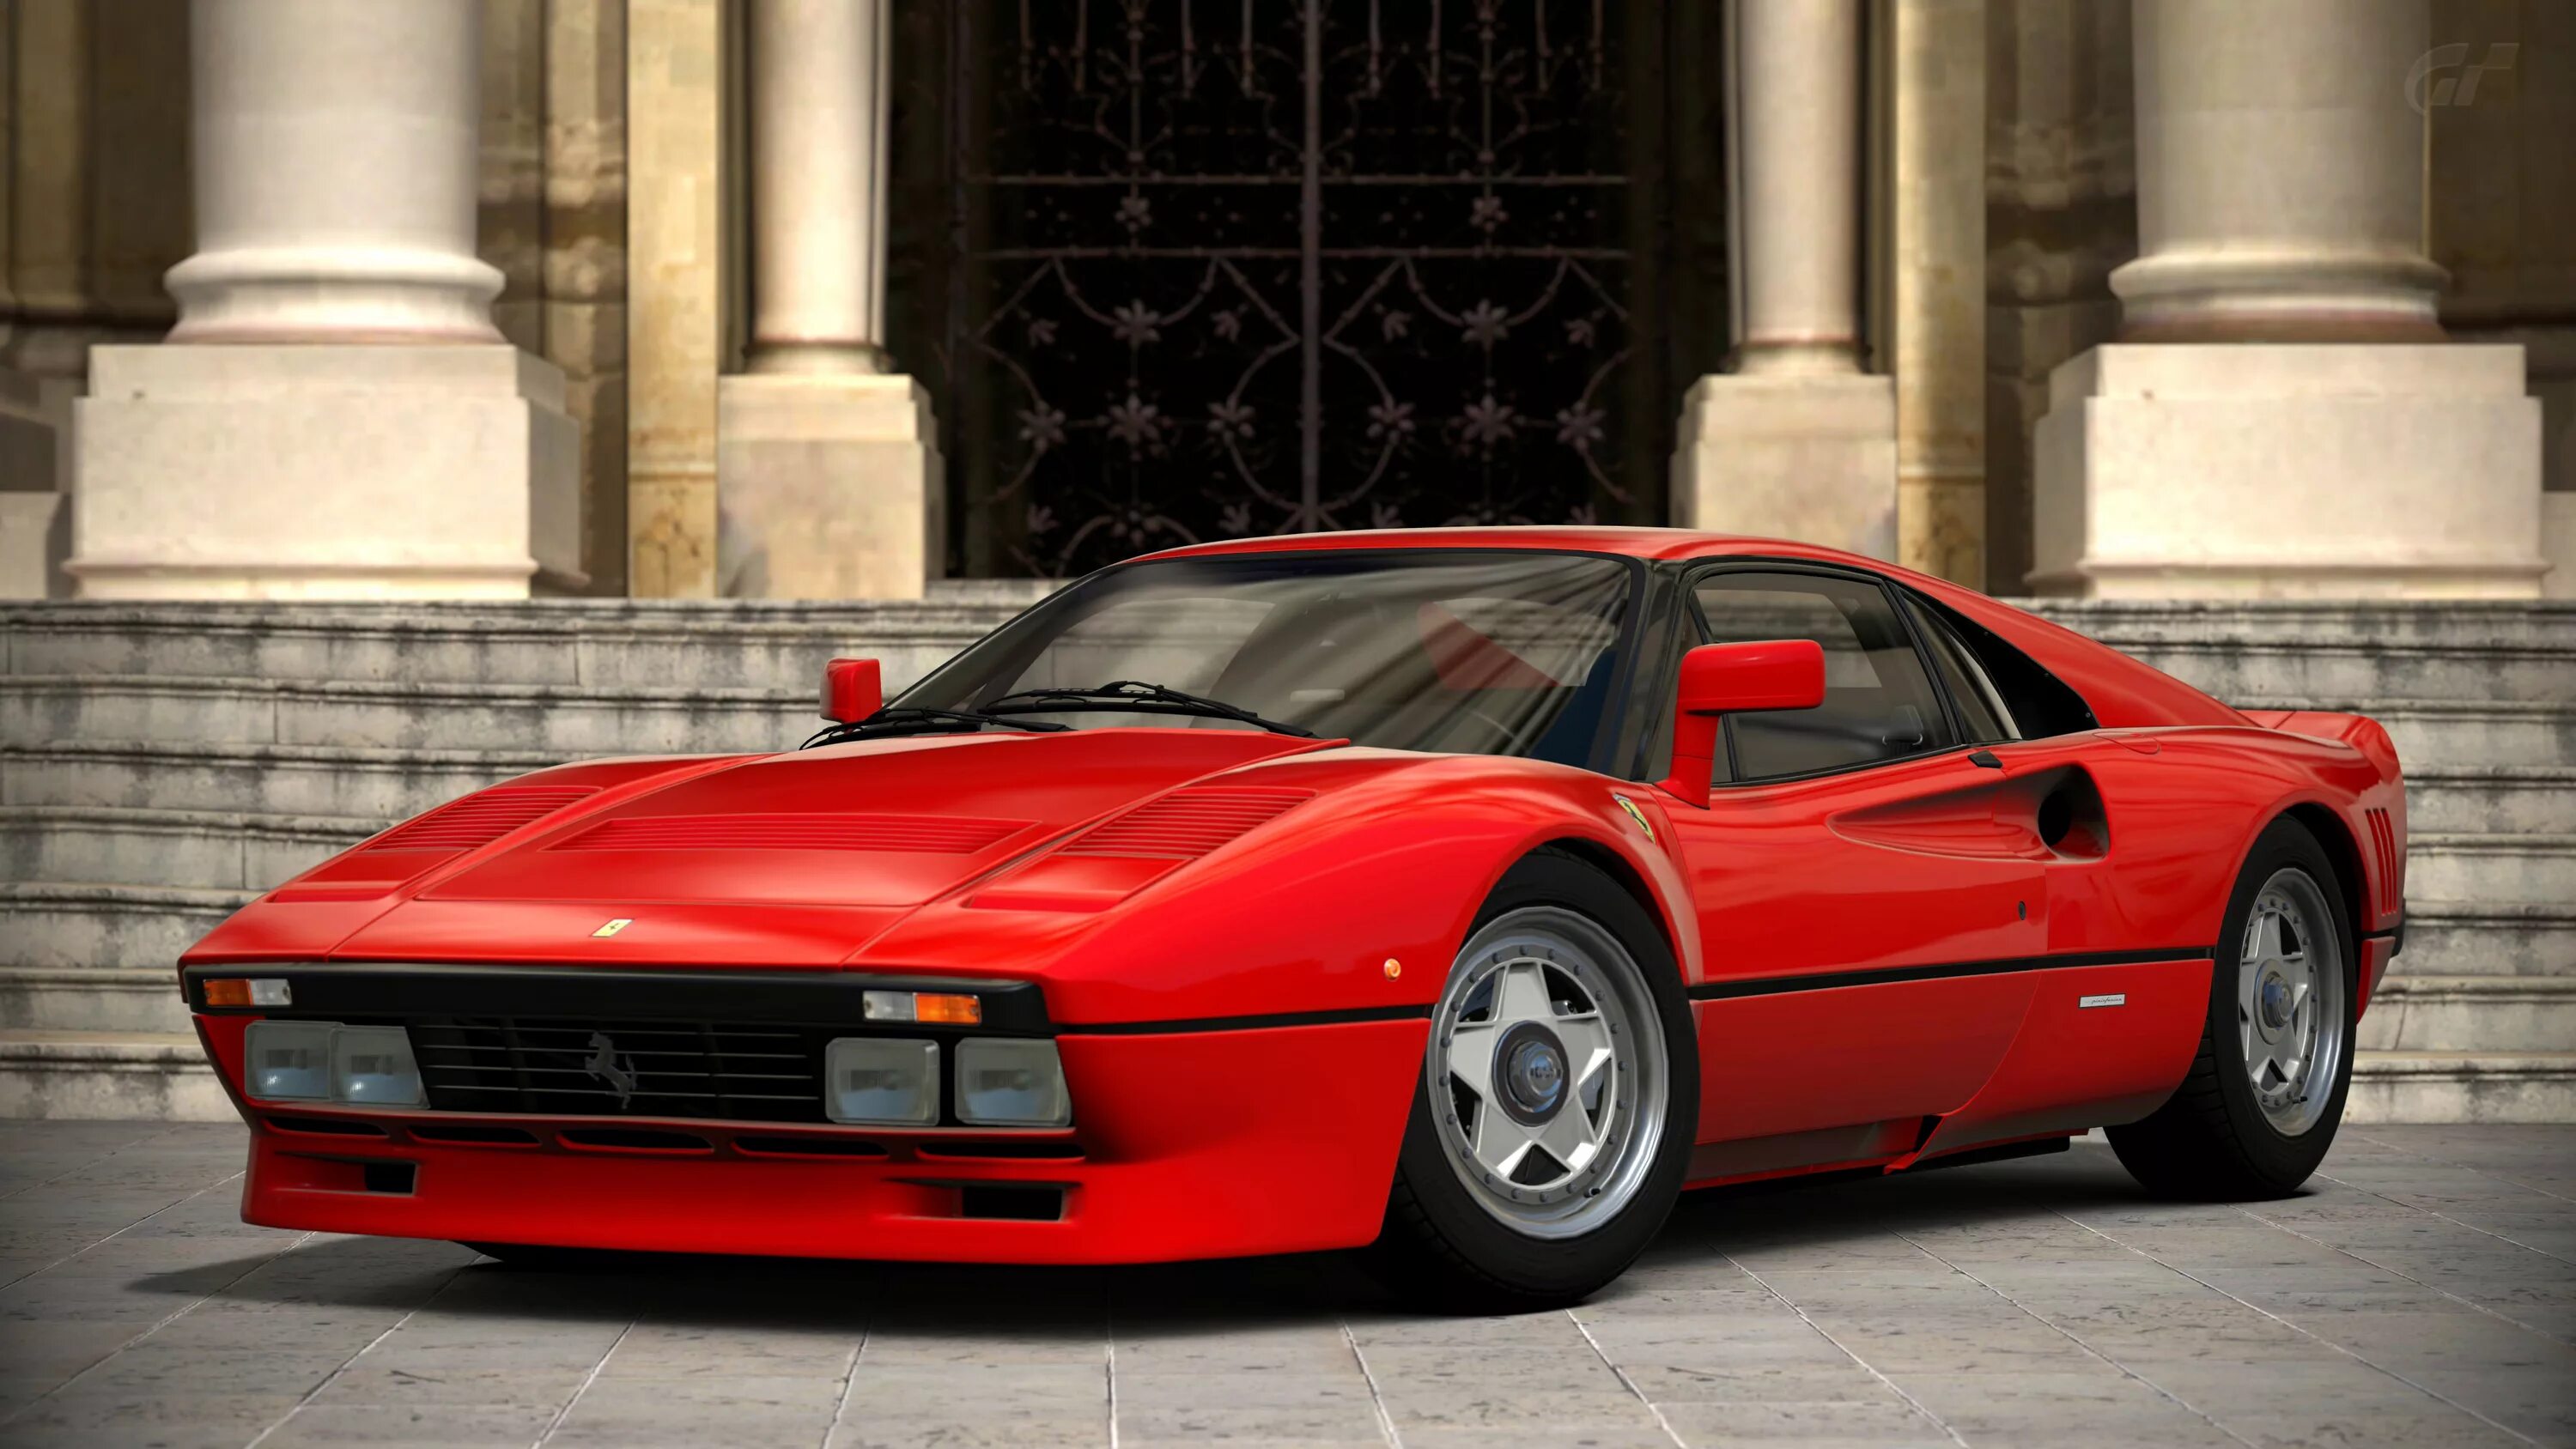 Ferrari 288 gto. Феррари 288 GTO. Ferrari 288 GTO от Ferrari s.p.a.. Феррари 288 ГТО. Ferrari 388 GTO.